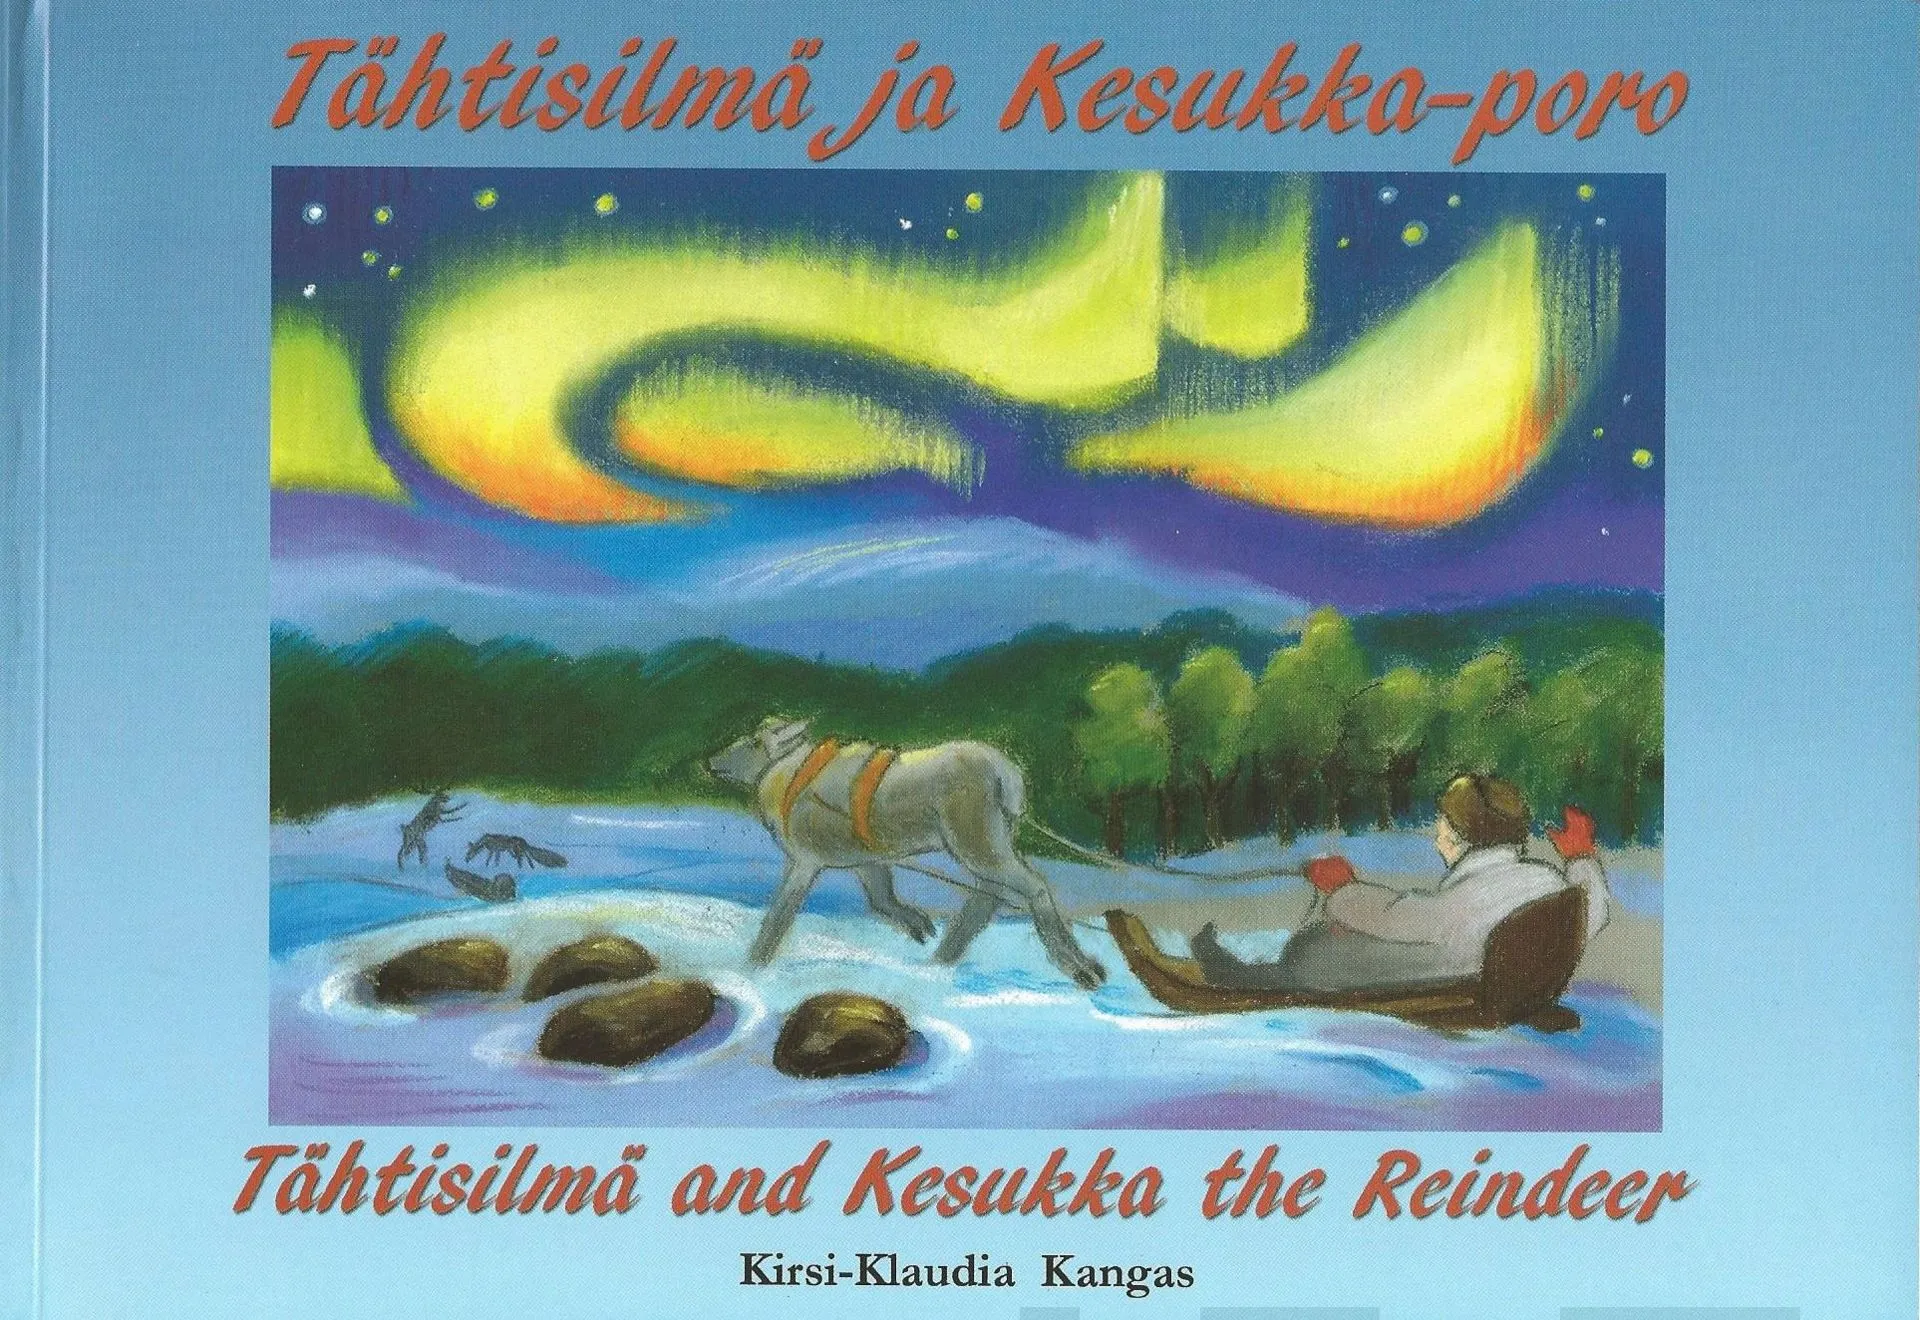 Kangas, Tähtisilmä ja Kesukka-poro - Tähtisilmä and Kesukka the Reindeer